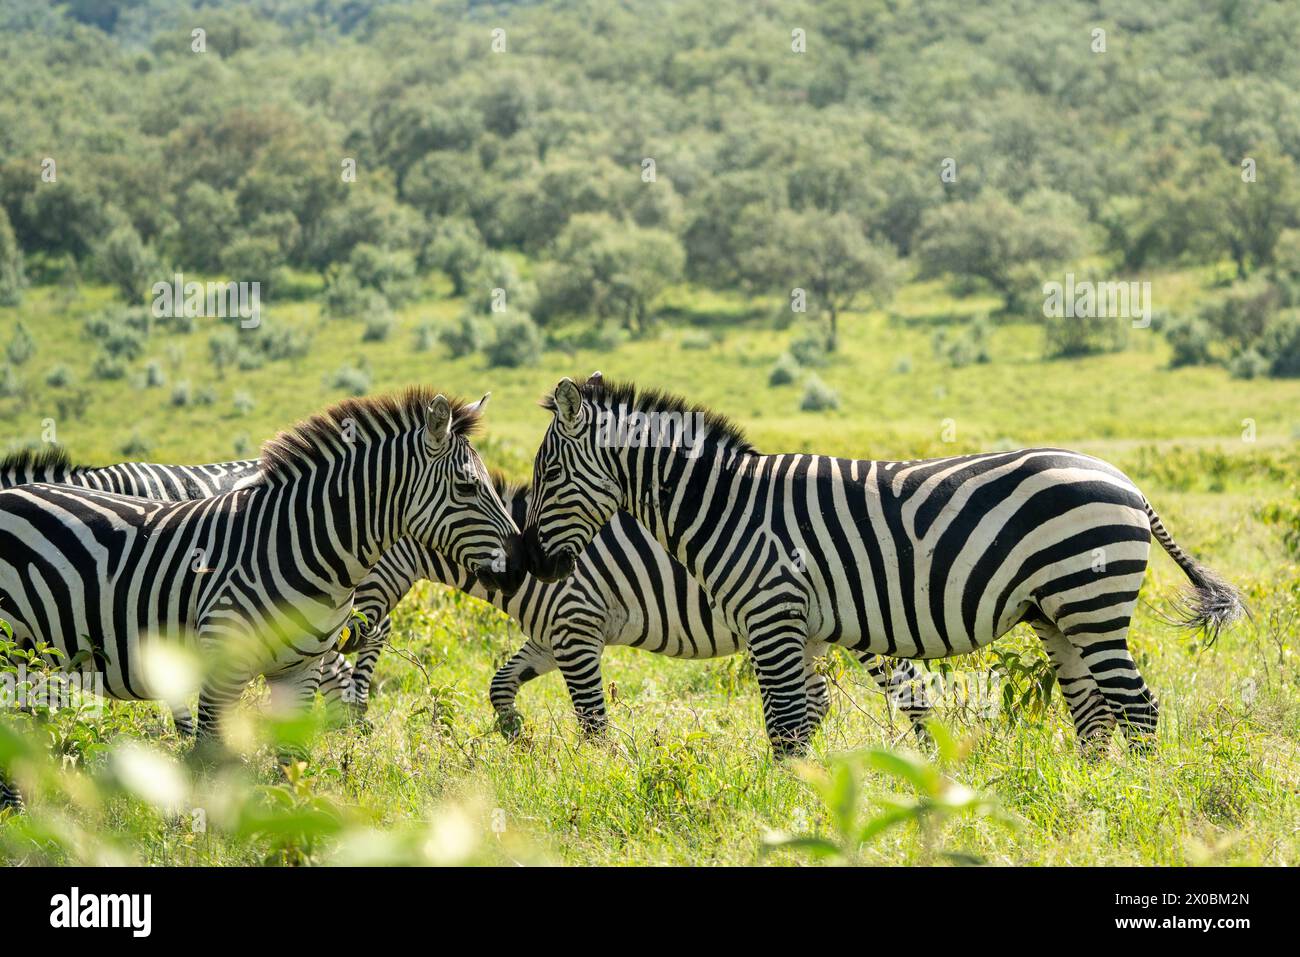 Kenia im Naturschutzgebiet kenias Stockfoto